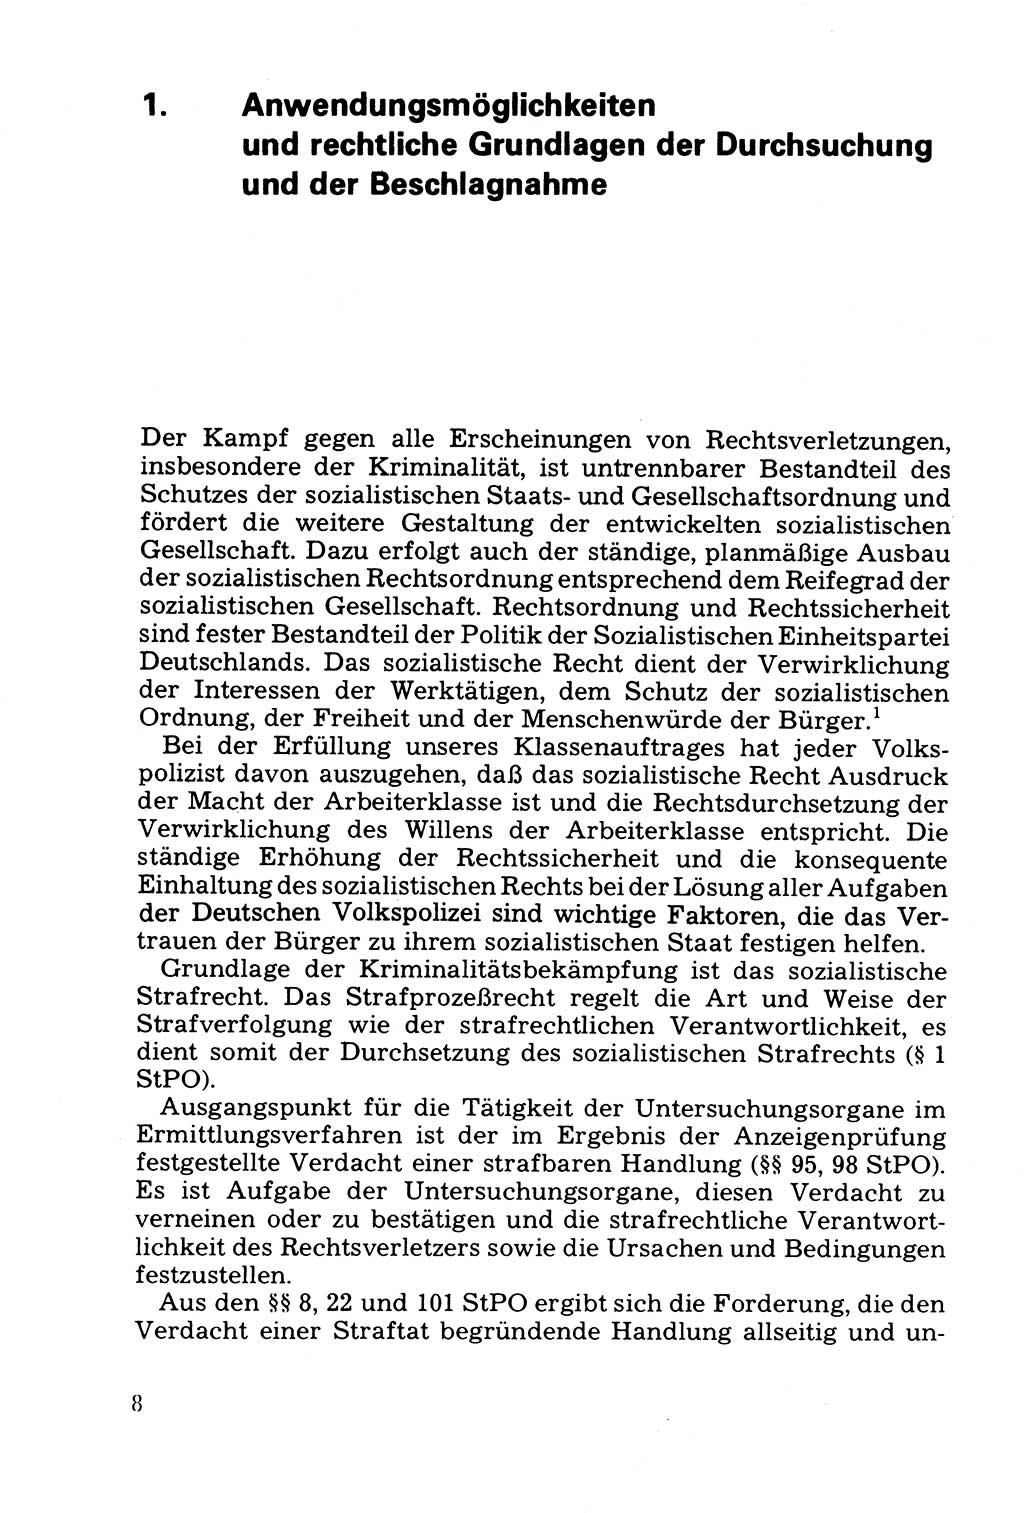 Die Durchsuchung und die Beschlagnahme [Deutsche Demokratische Republik (DDR)] 1979, Seite 8 (Durchs. Beschl. DDR 1979, S. 8)